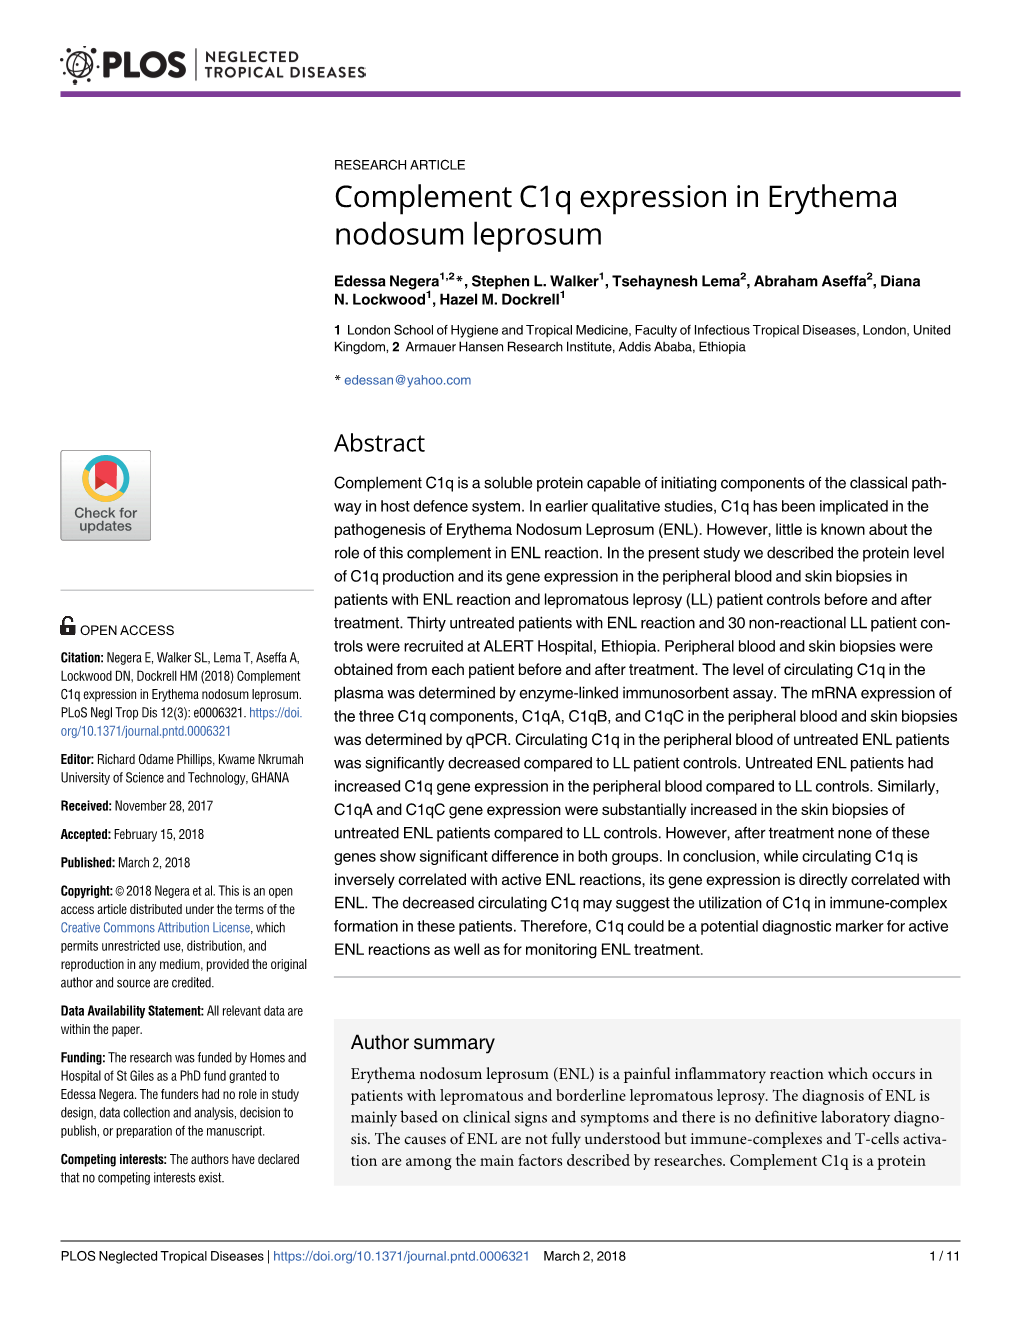 Complement C1q Expression in Erythema Nodosum Leprosum